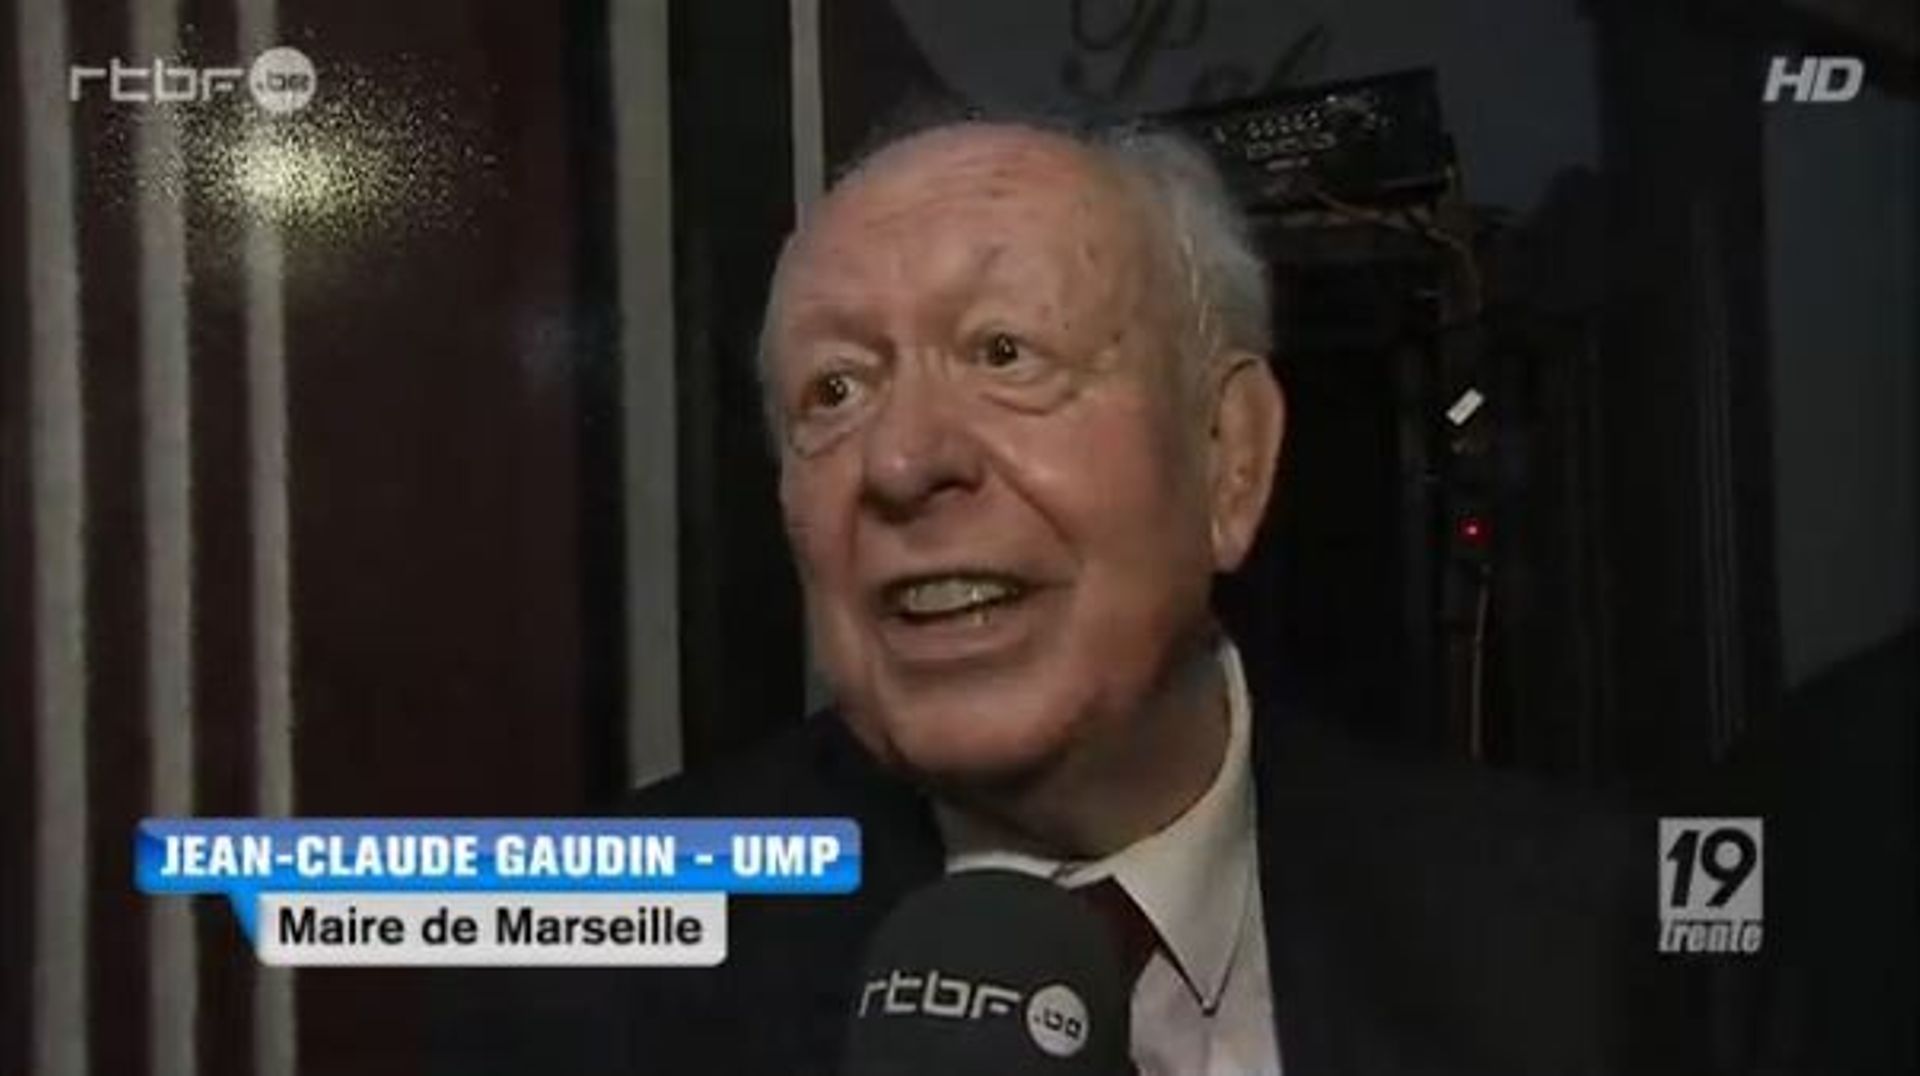 Jean-claude Gaudin, maire de Marseille: "le président veut mon scalp"